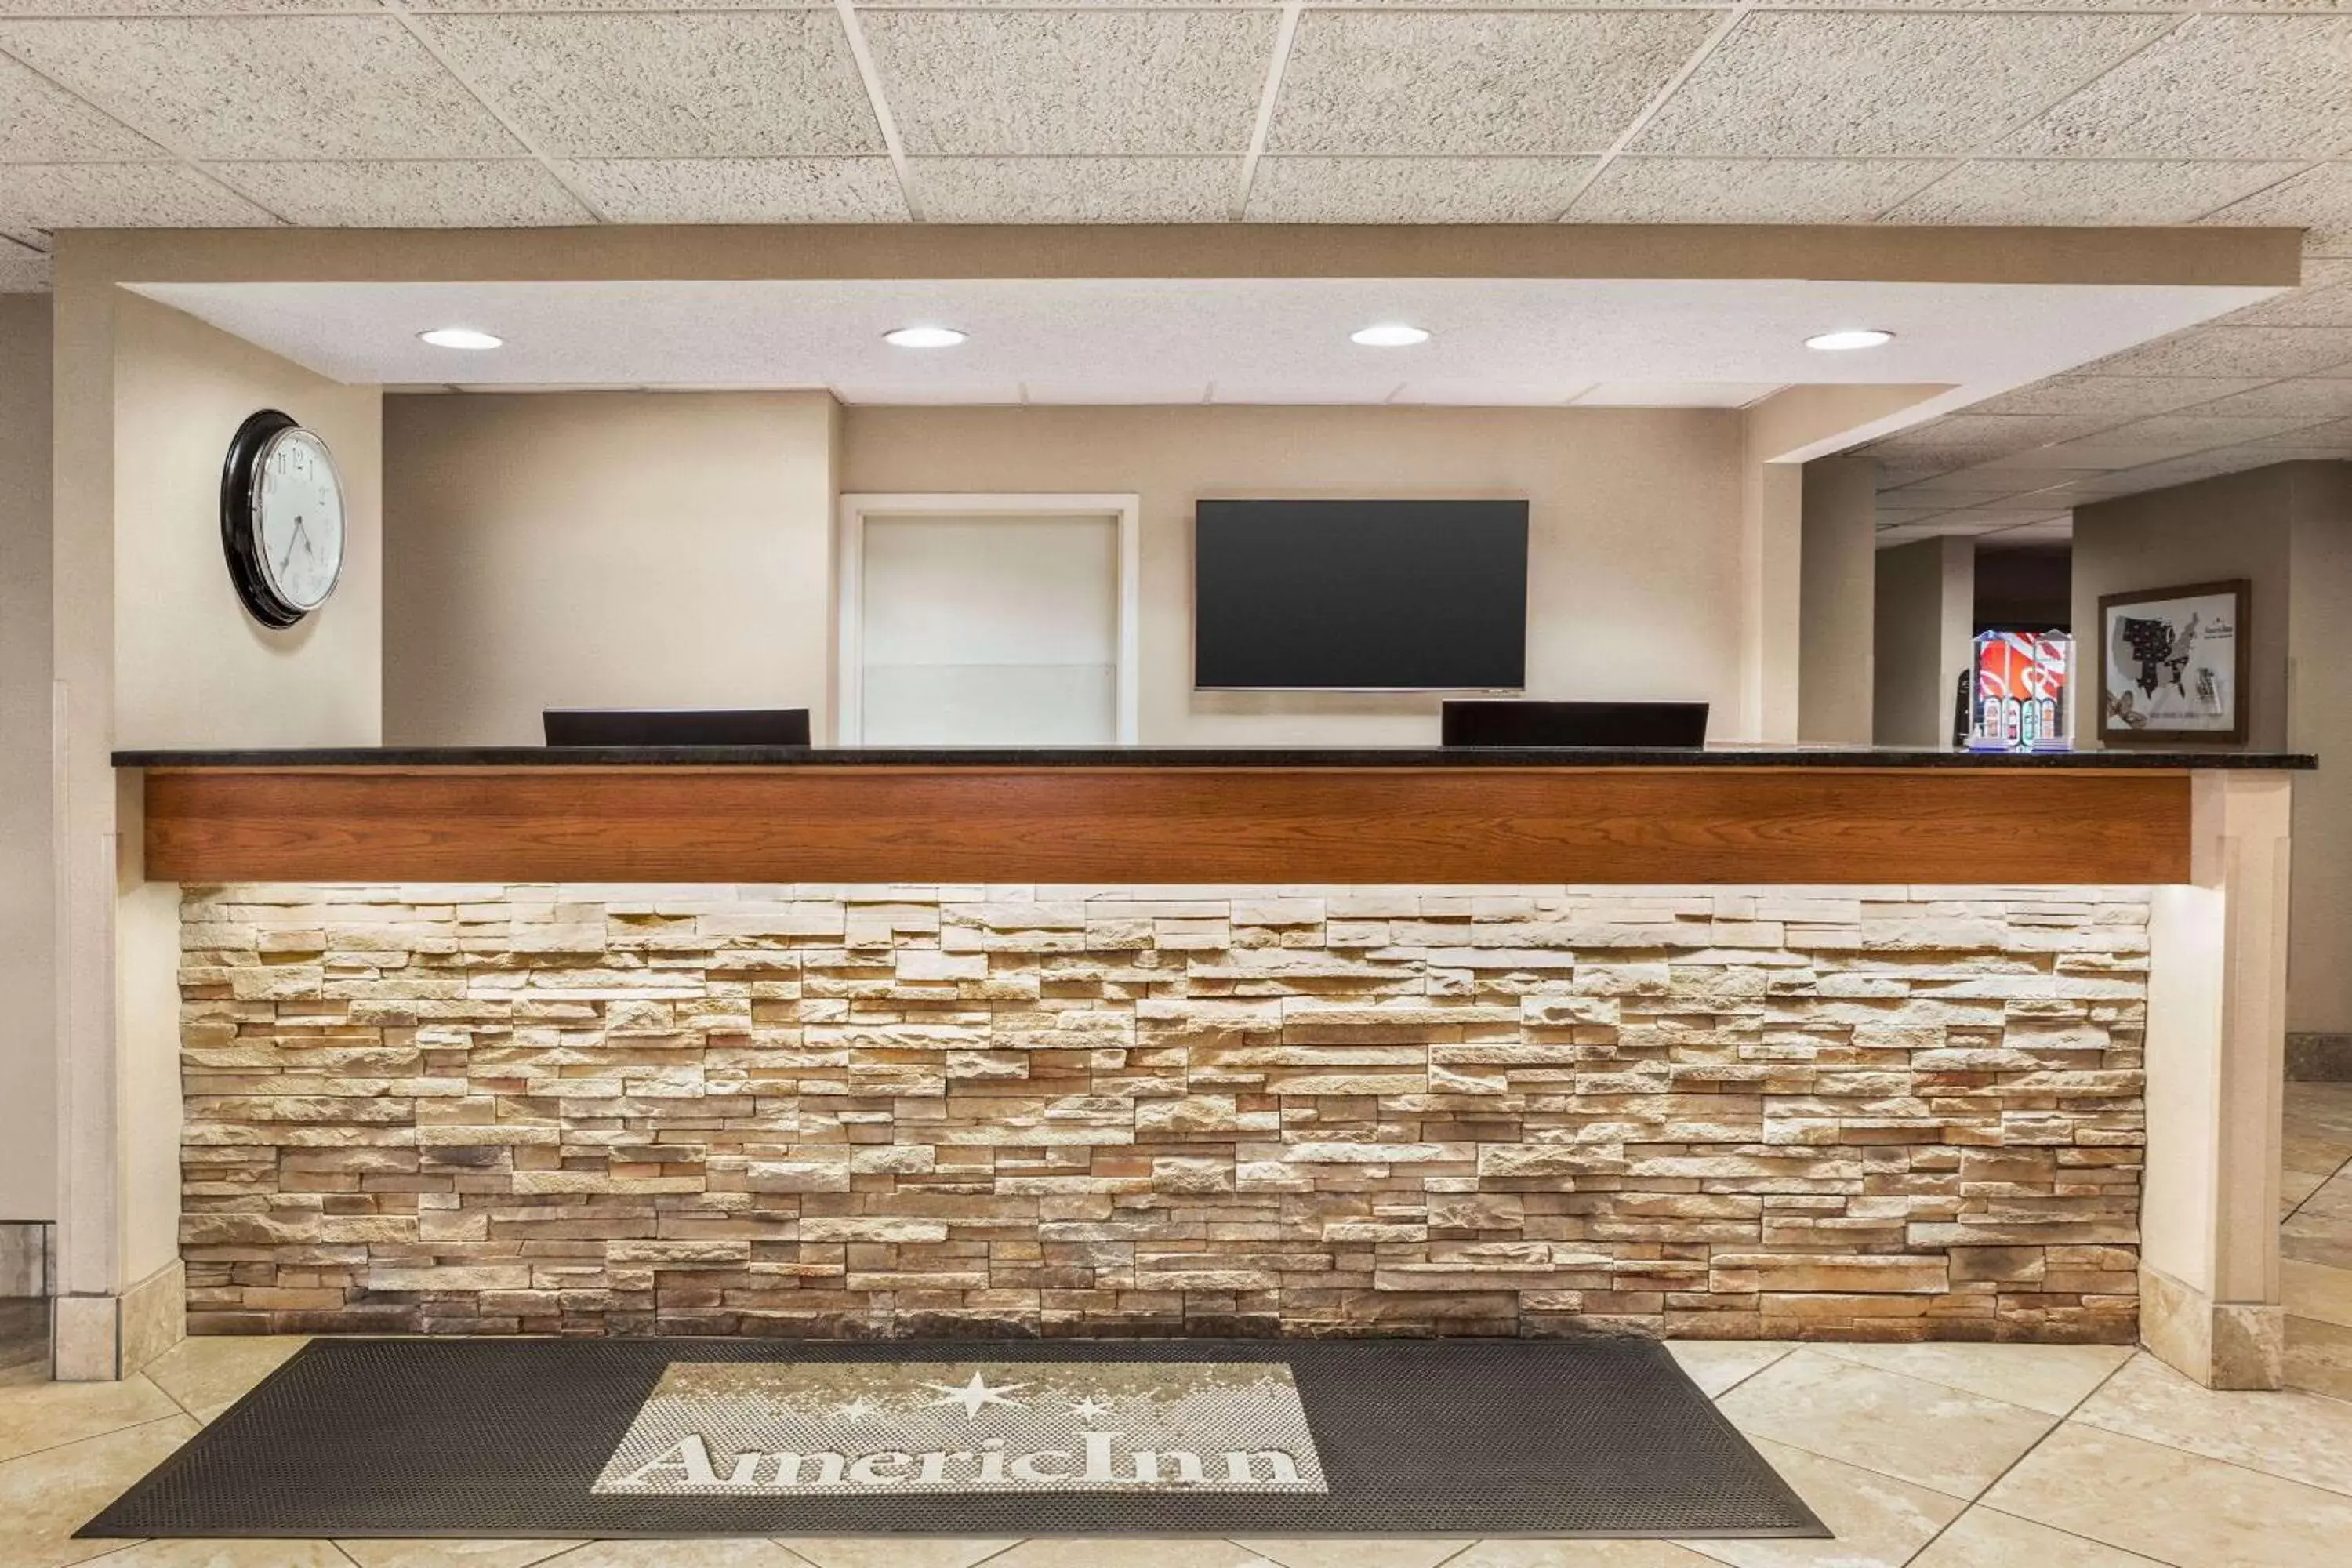 Lobby or reception, Lobby/Reception in AmericInn by Wyndham Madison West